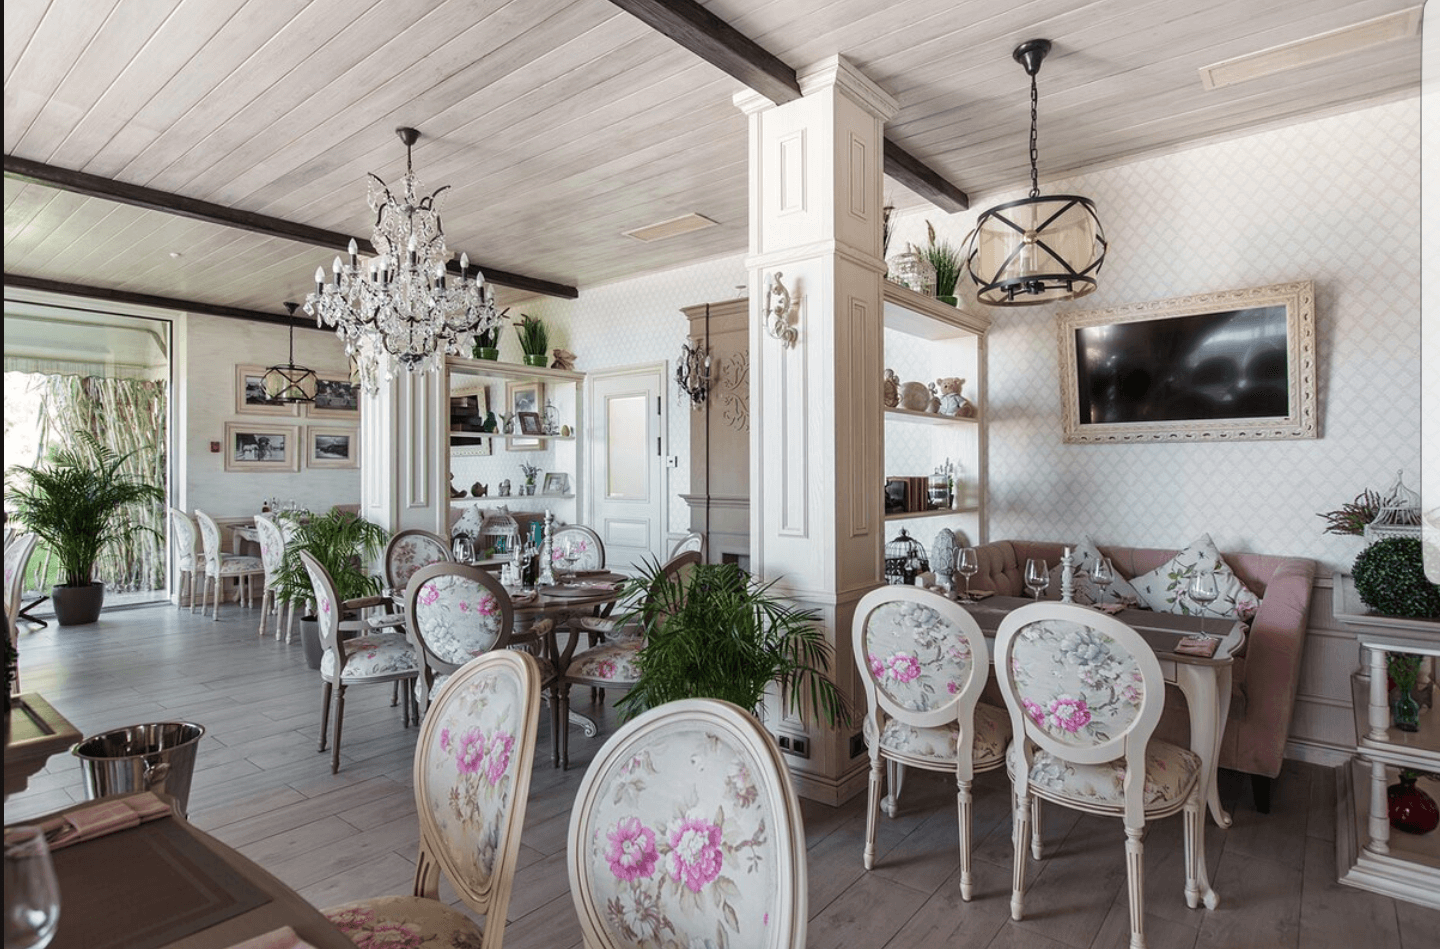 Дизайн кухни в стиле кафе с интерьером французского прованса